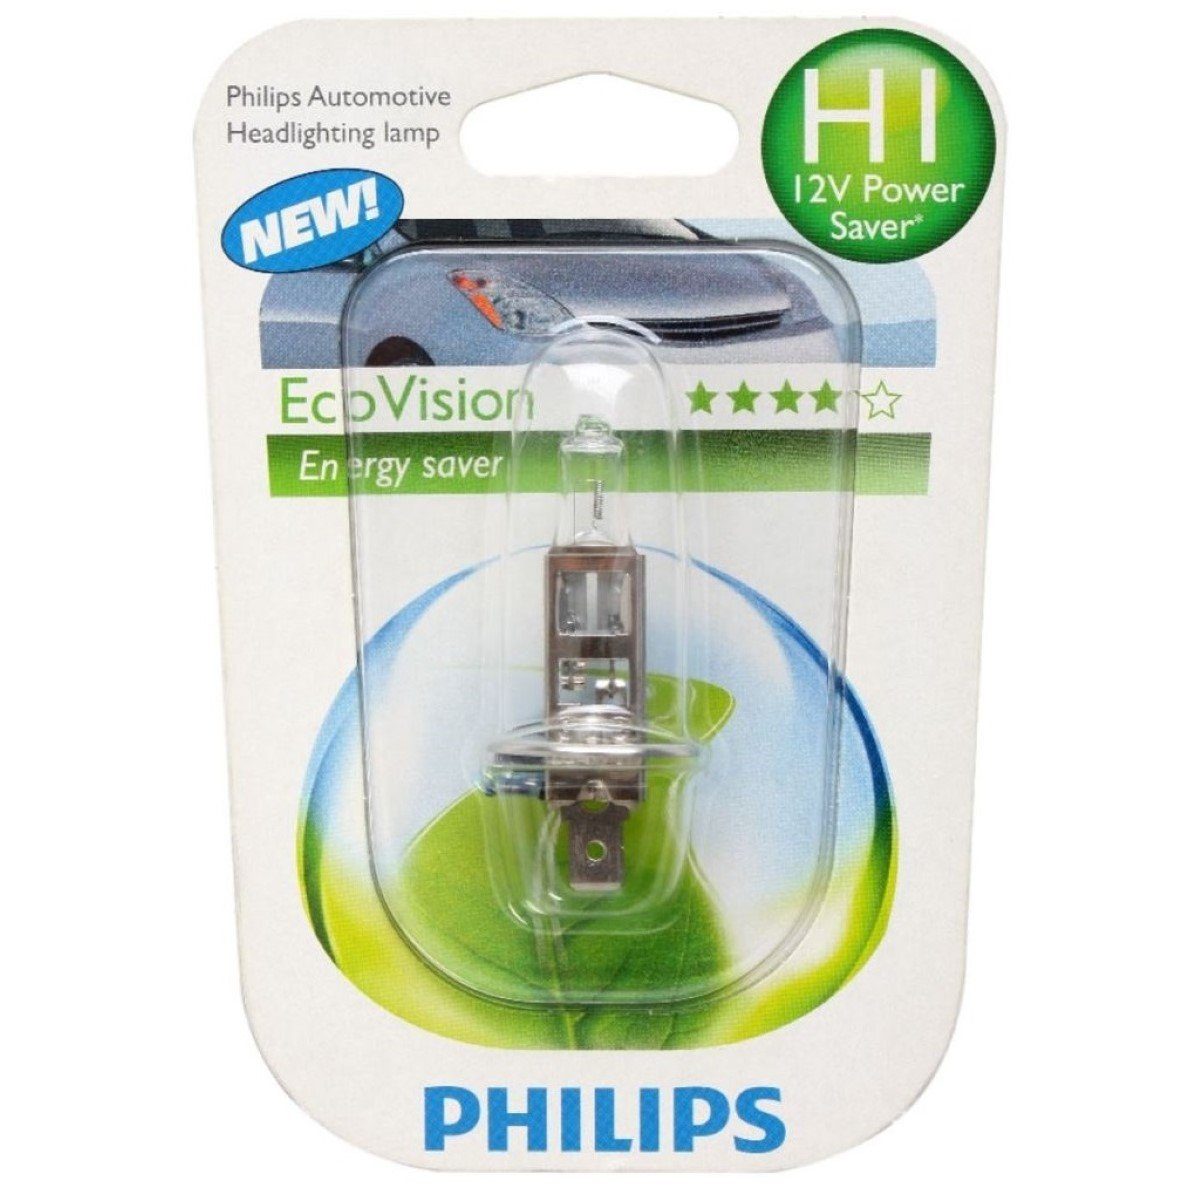 P14,5s H1 Auto-Birne H1 Philips KFZ-Ersatzleuchte H1, mit 12V Halogen-Birnen Auto-Lampe, Sockel Energysaver 12V 55W St., 1 Scheinwerfer-Lampe Eco-Vision Weiß,